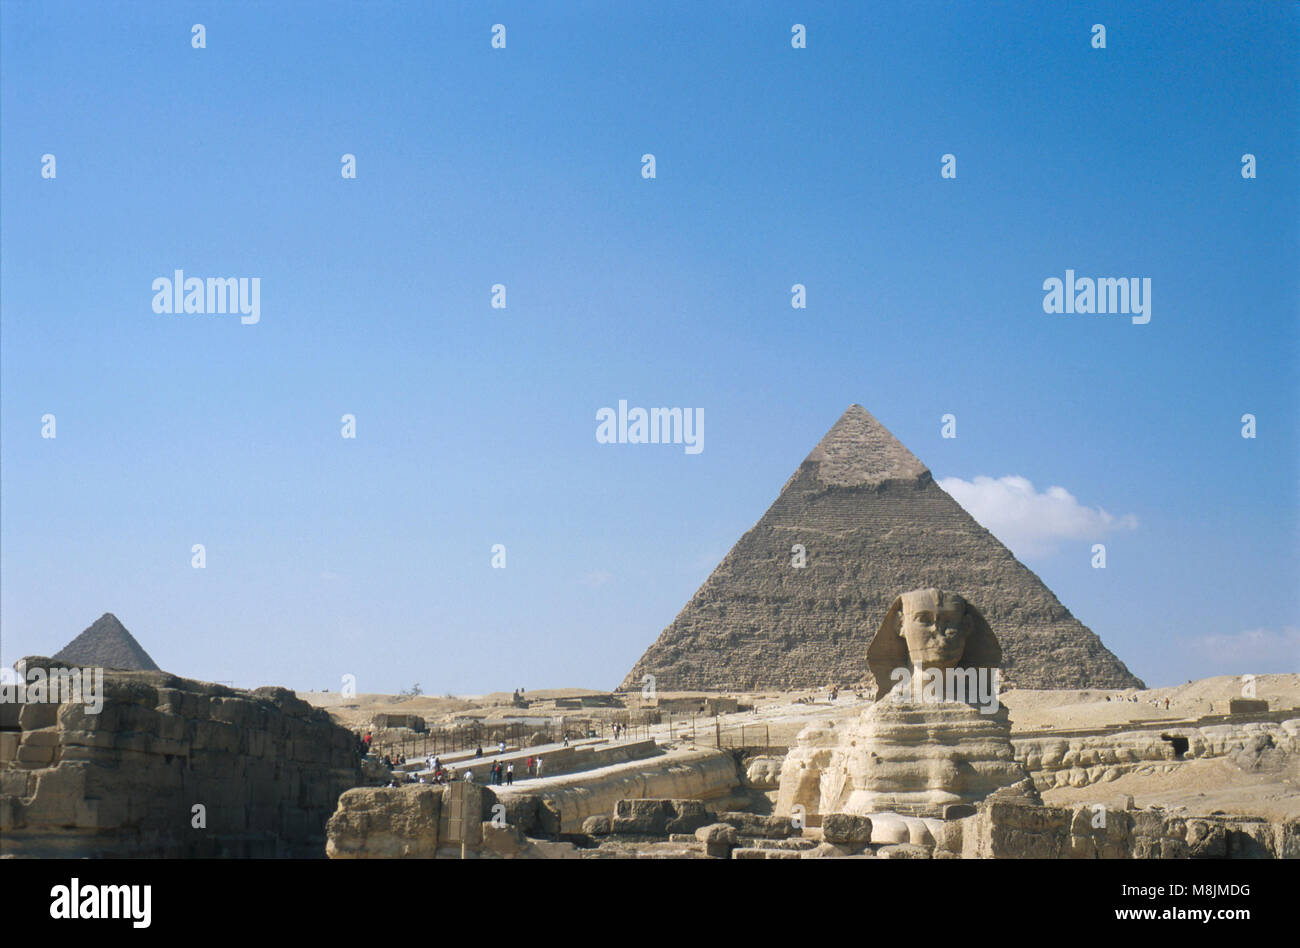 The Great Pyramids at Giza Stock Photo